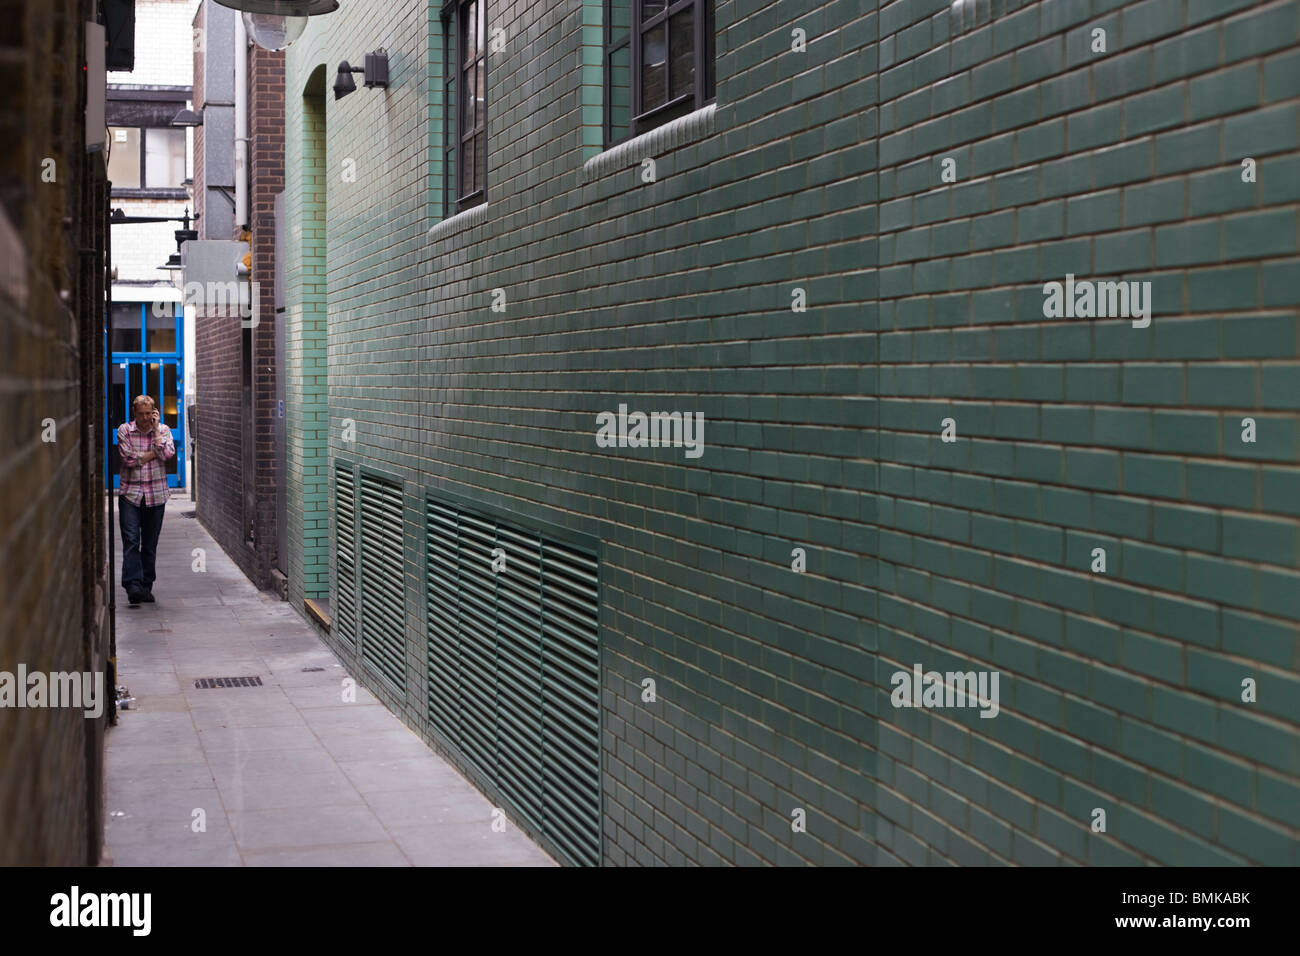 Un hombre se toma una discreta llamada telefónica en un estrecho callejón de Soho fuera de oficinas en Londres. Foto de stock